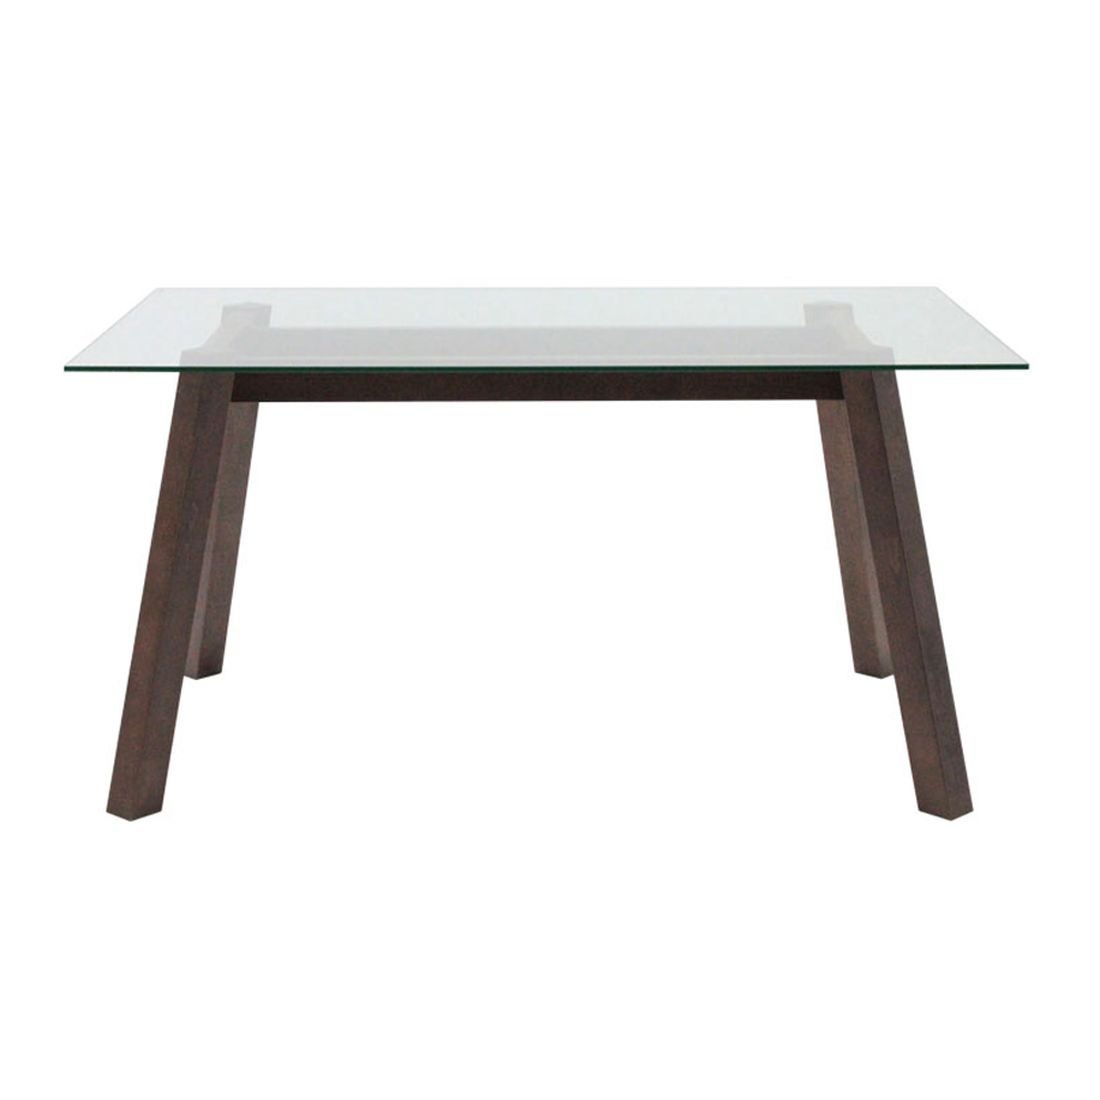 โต๊ะทานอาหาร โต๊ะอาหารขาไม้ท๊อปกระจก รุ่น Ethan-SB Design Square